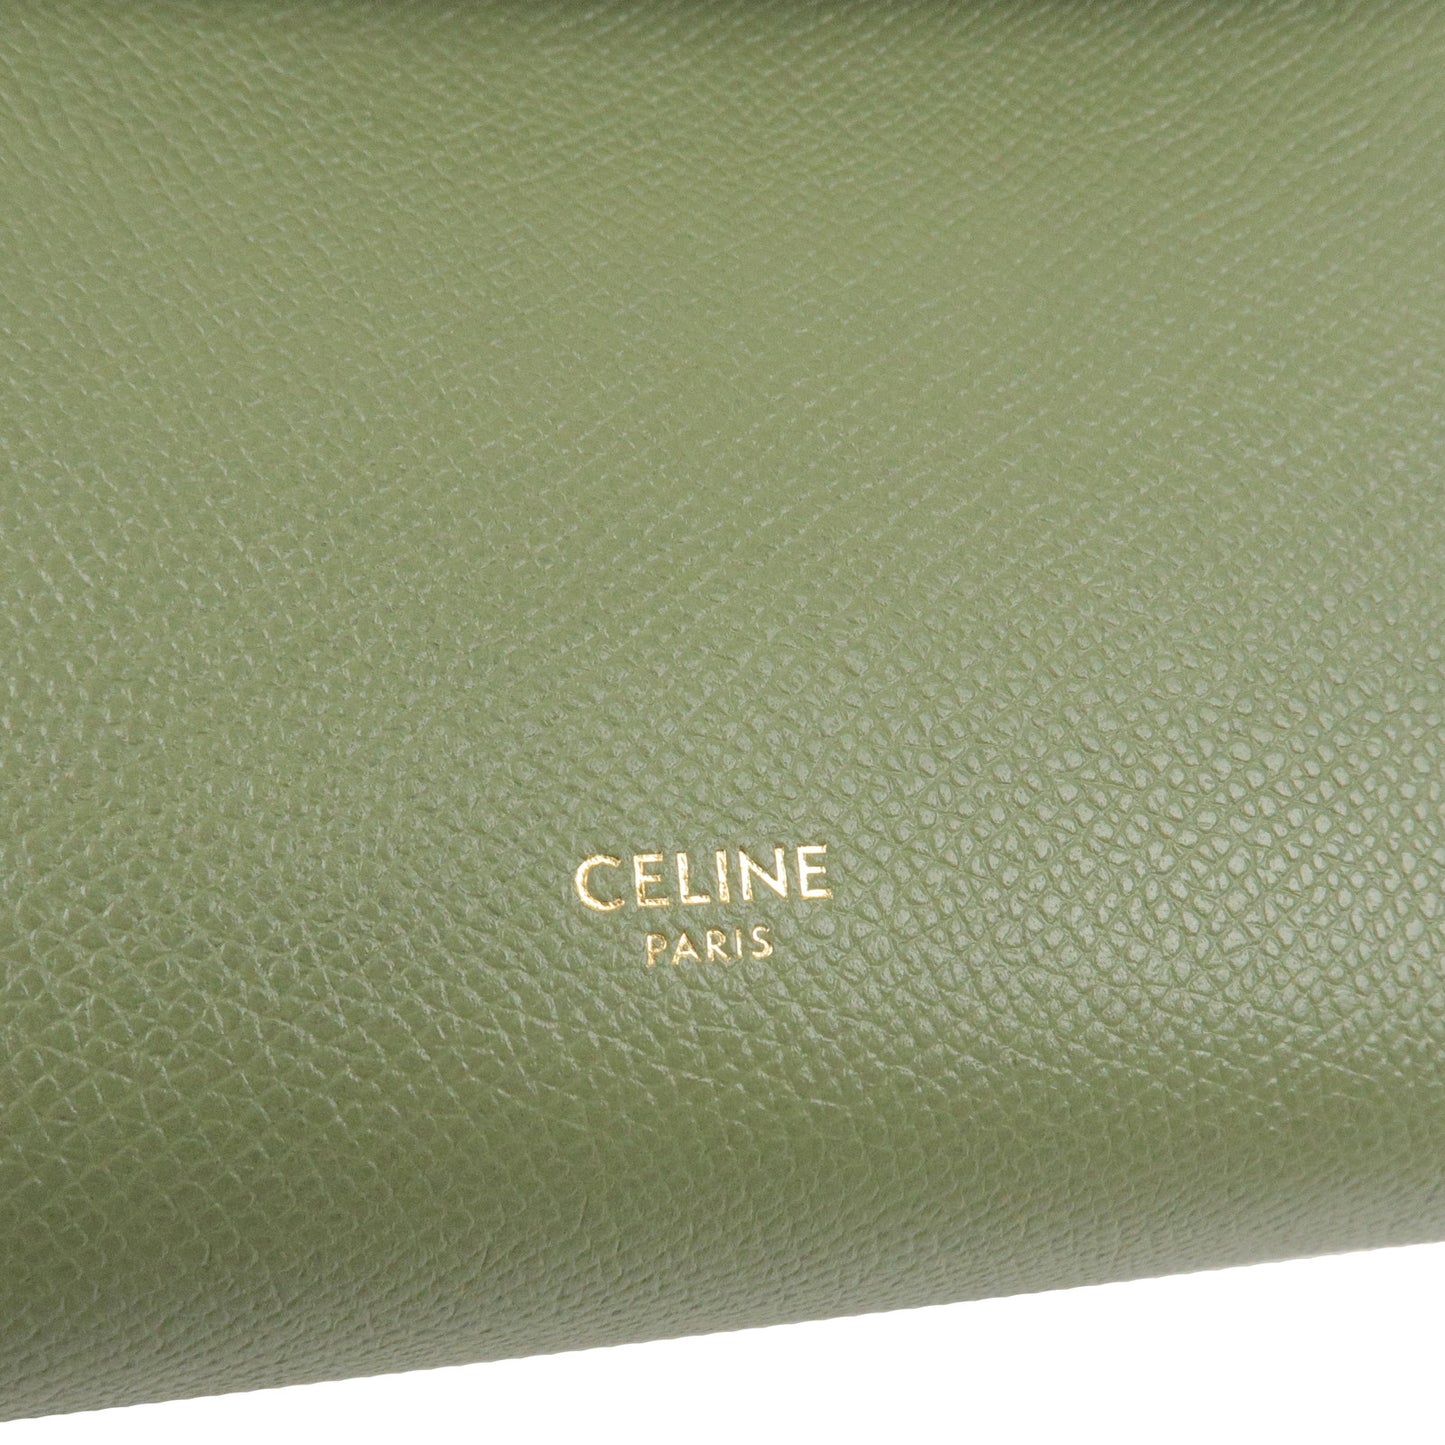 CELINE Leather Micro Belt Bag 2Way Shoulder Bag Green 189153